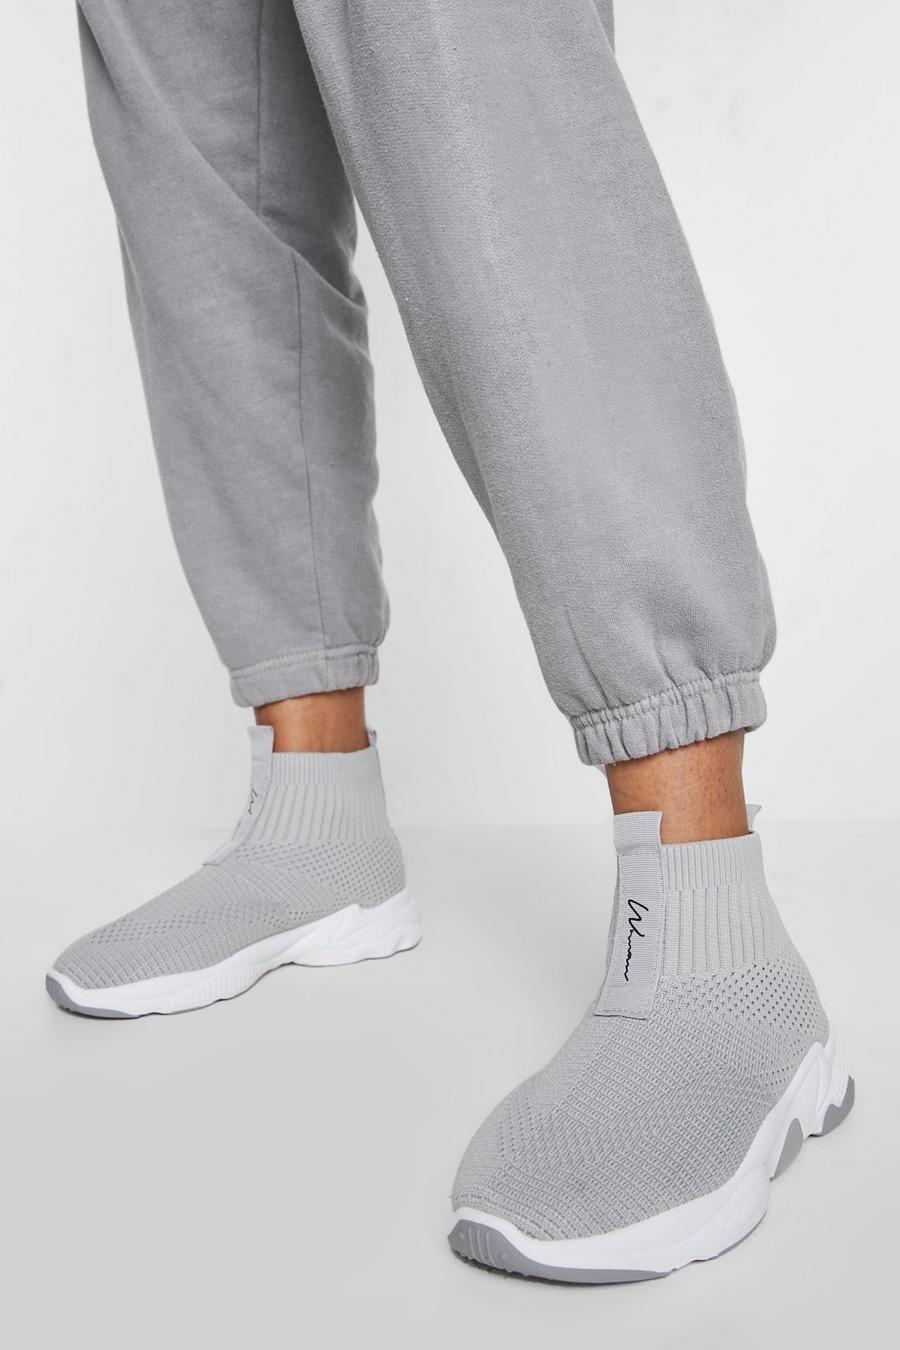 Botas calcetín de holgura ancha con suela gruesa, Grey grigio image number 1